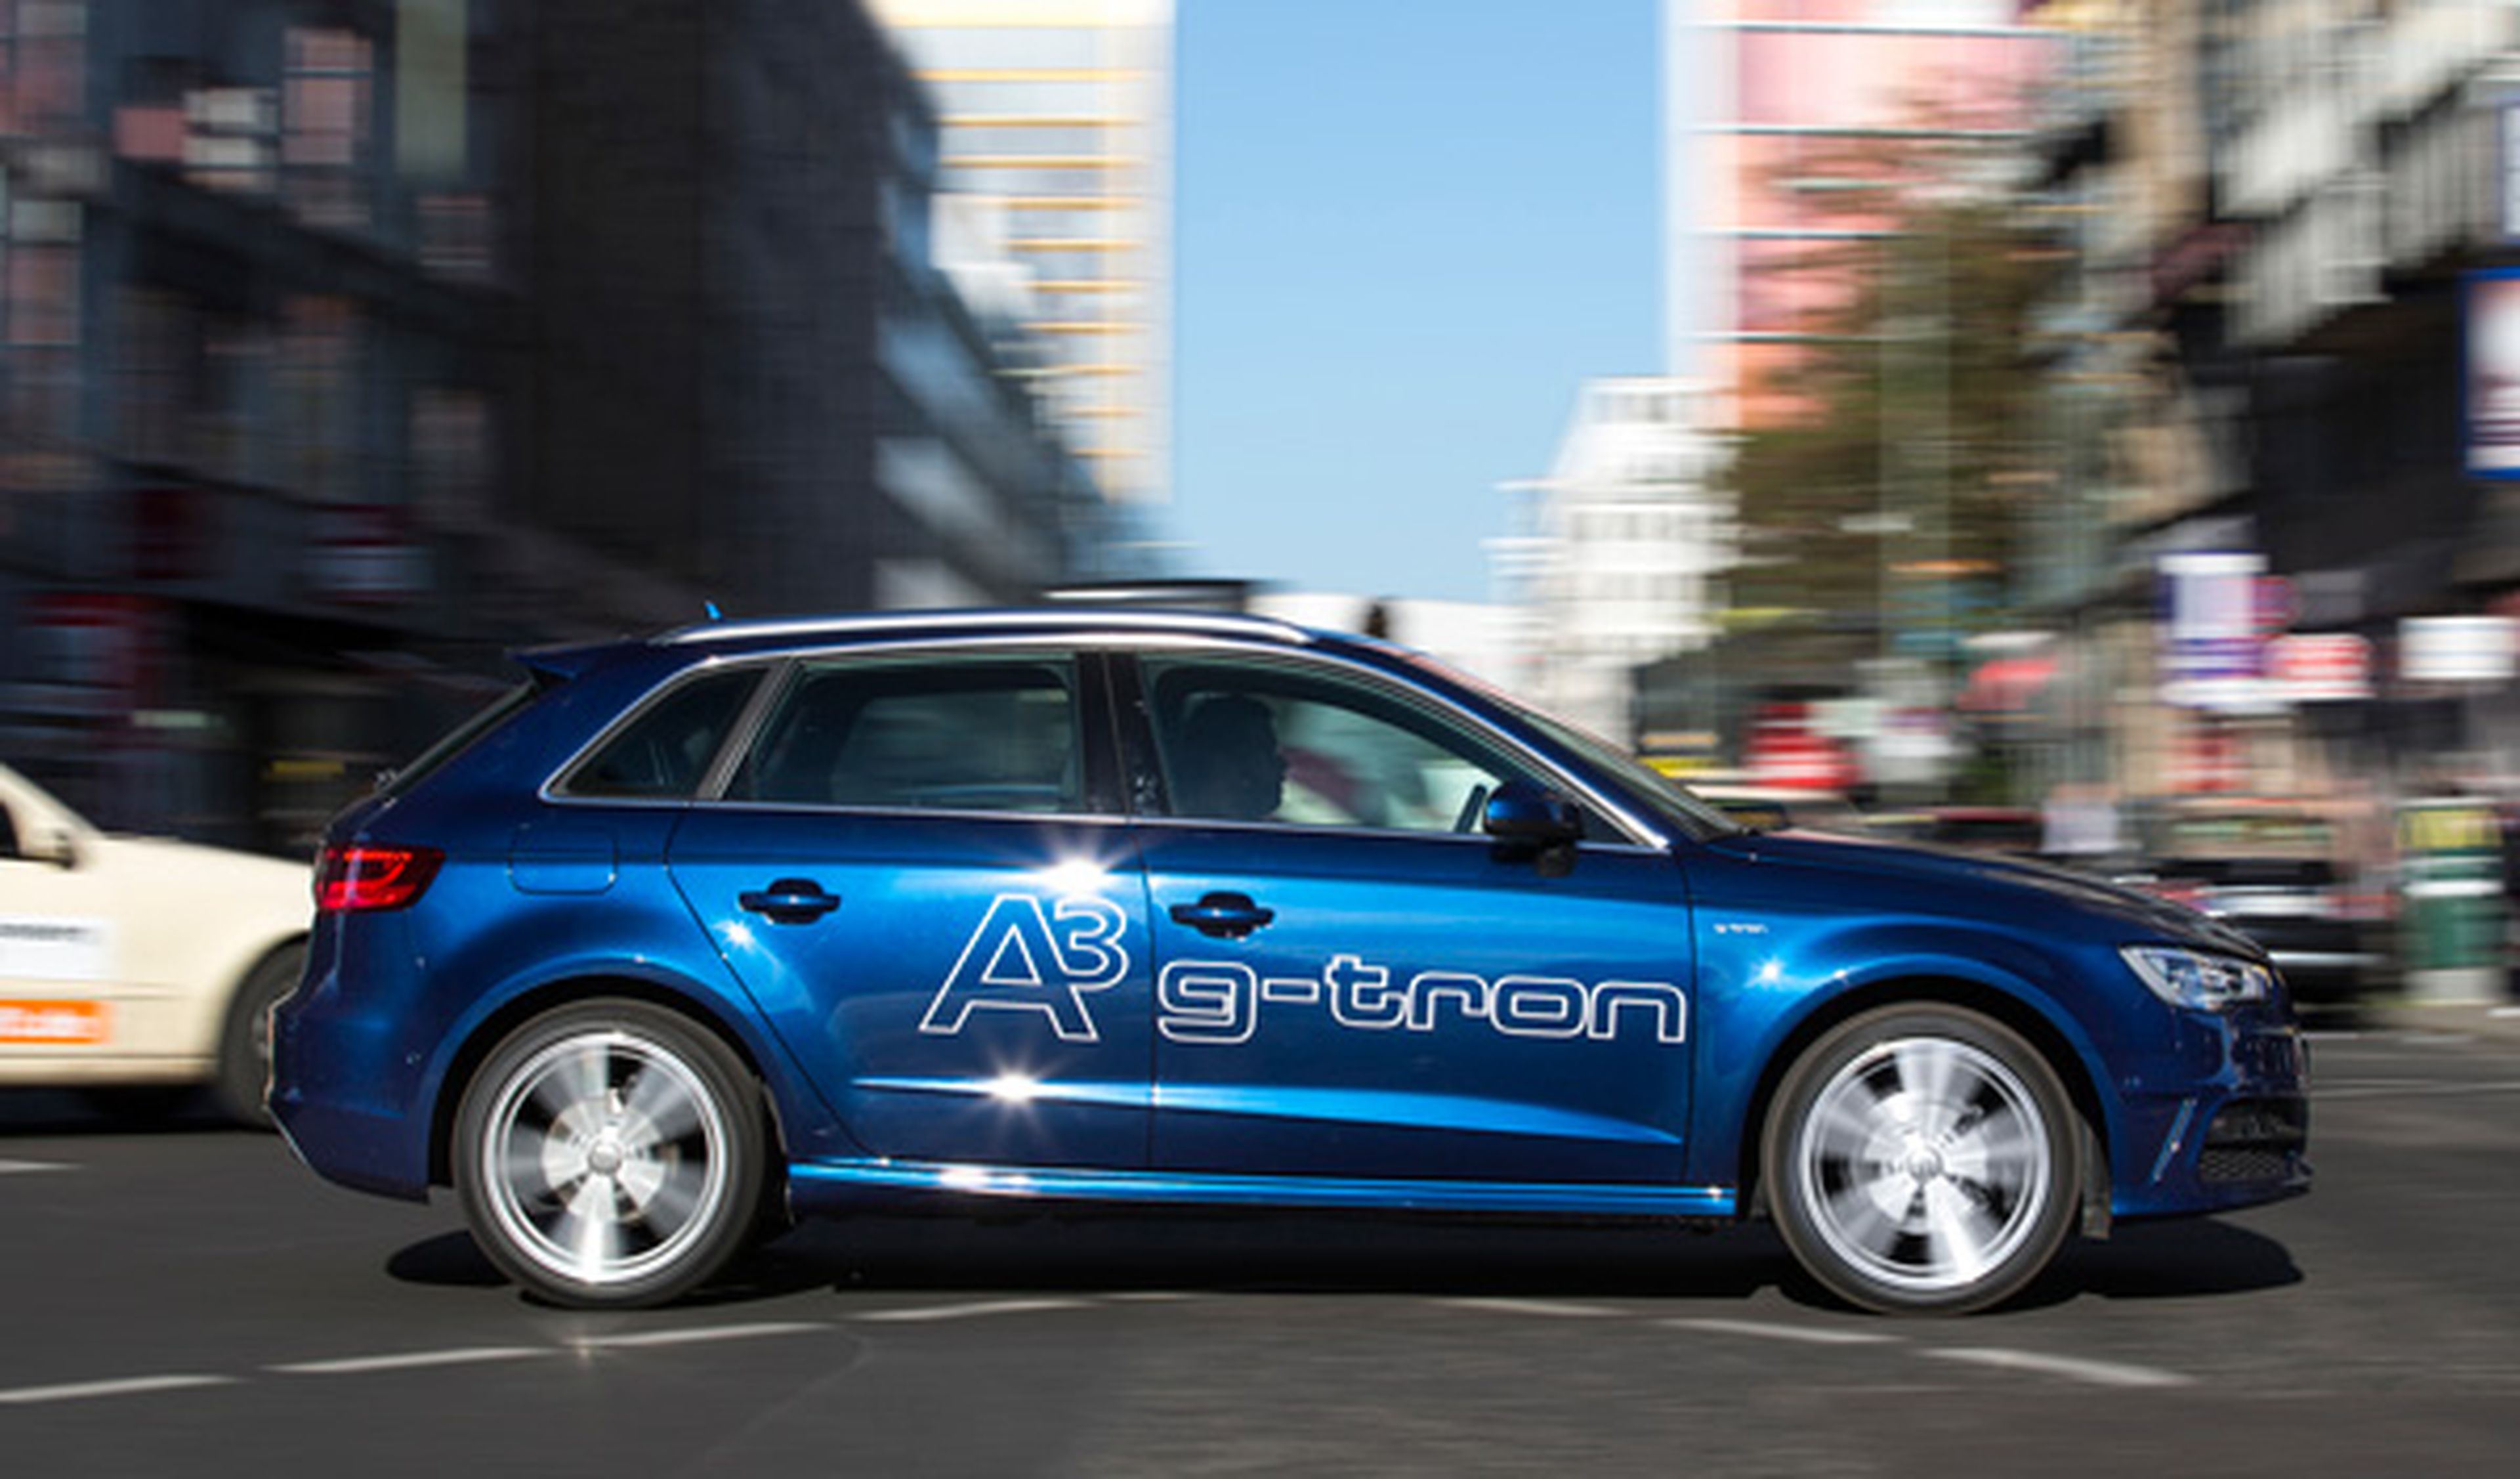 El Audi A3 g-tron tiene una autonomía conjunta de 1.300 km